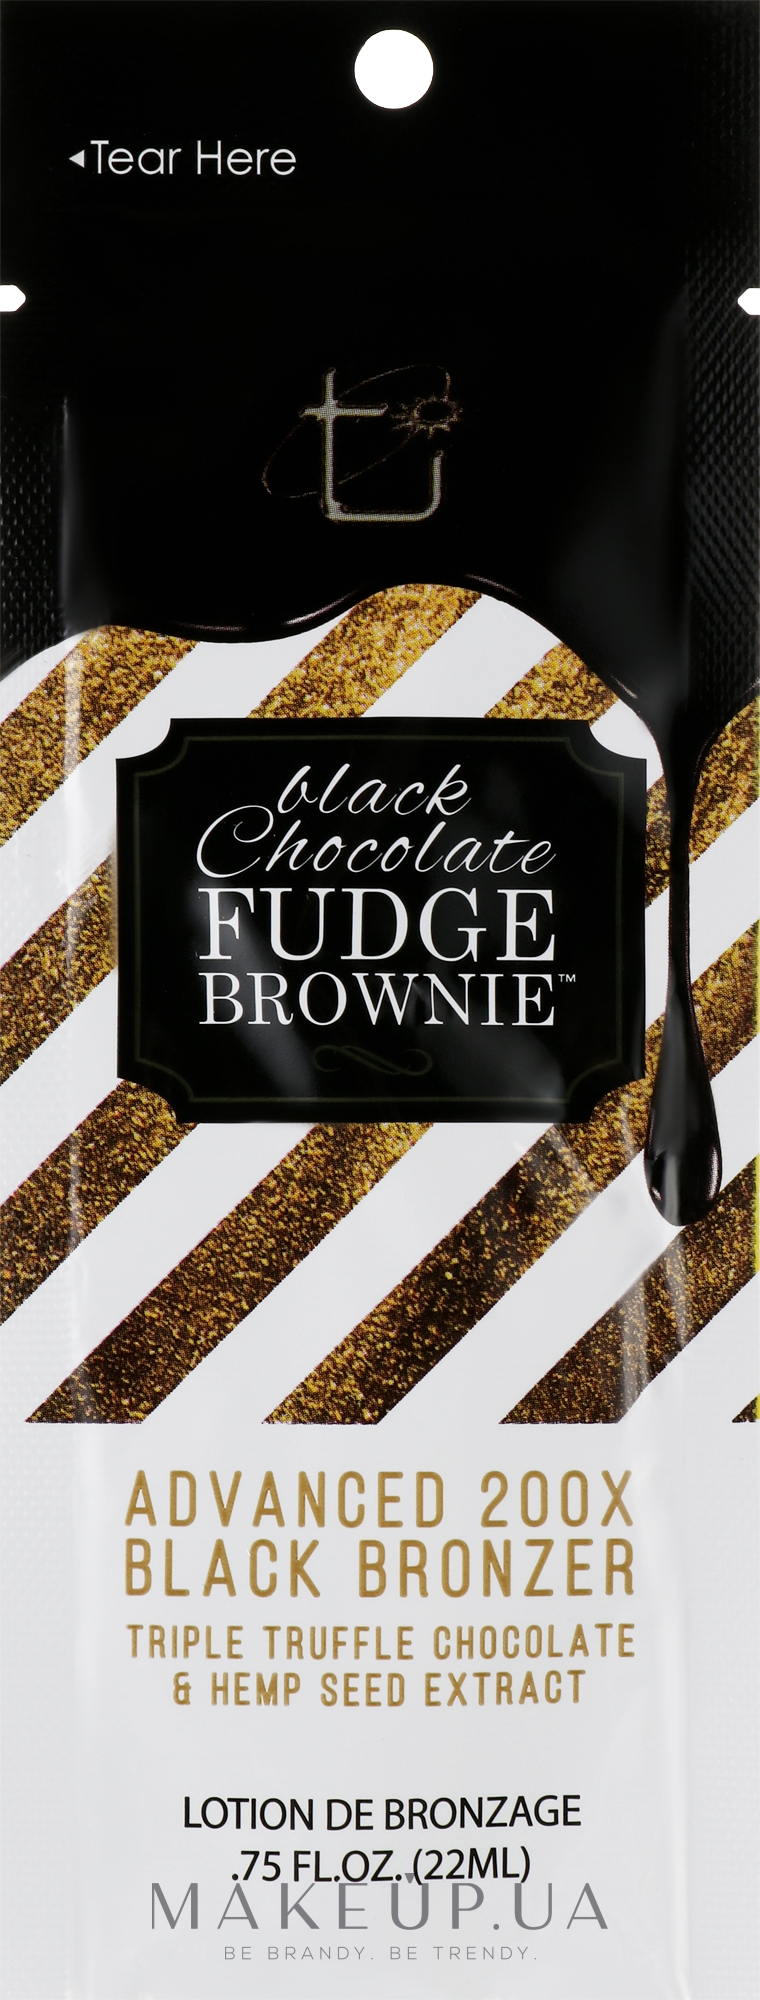 Крем для солярію з потрійним трюфельним шоколадом, ефект приголомшливий після першого застосування - Tan Incorporated Black Chocolate Fudge Brownie 200X (пробник) — фото 22ml